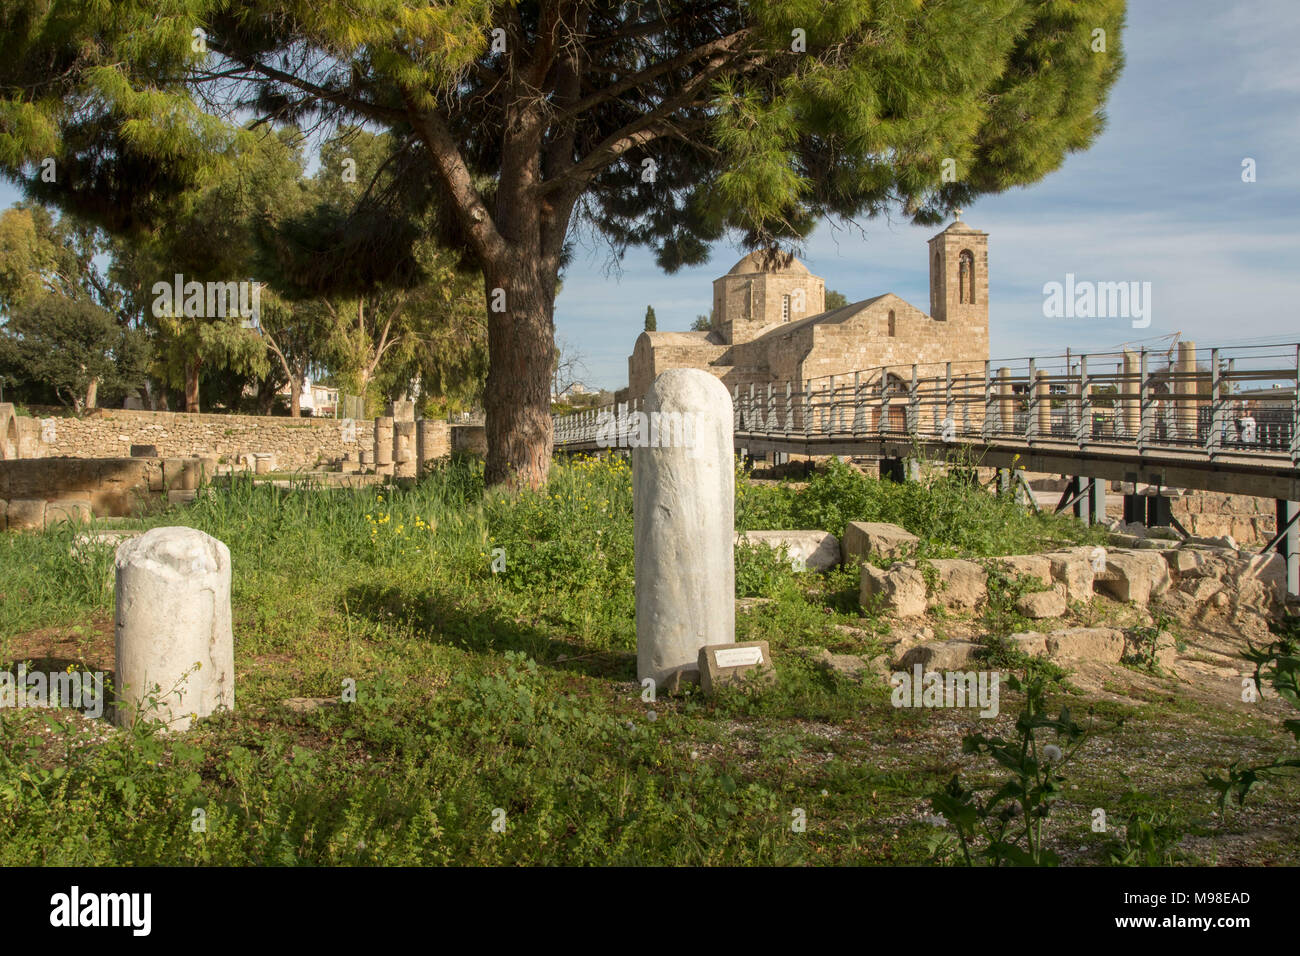 St. Paul's Säule Kato Pafos, mediterranen religiöse heilige Stätte in Paphos, Zypern, Europa Stockfoto